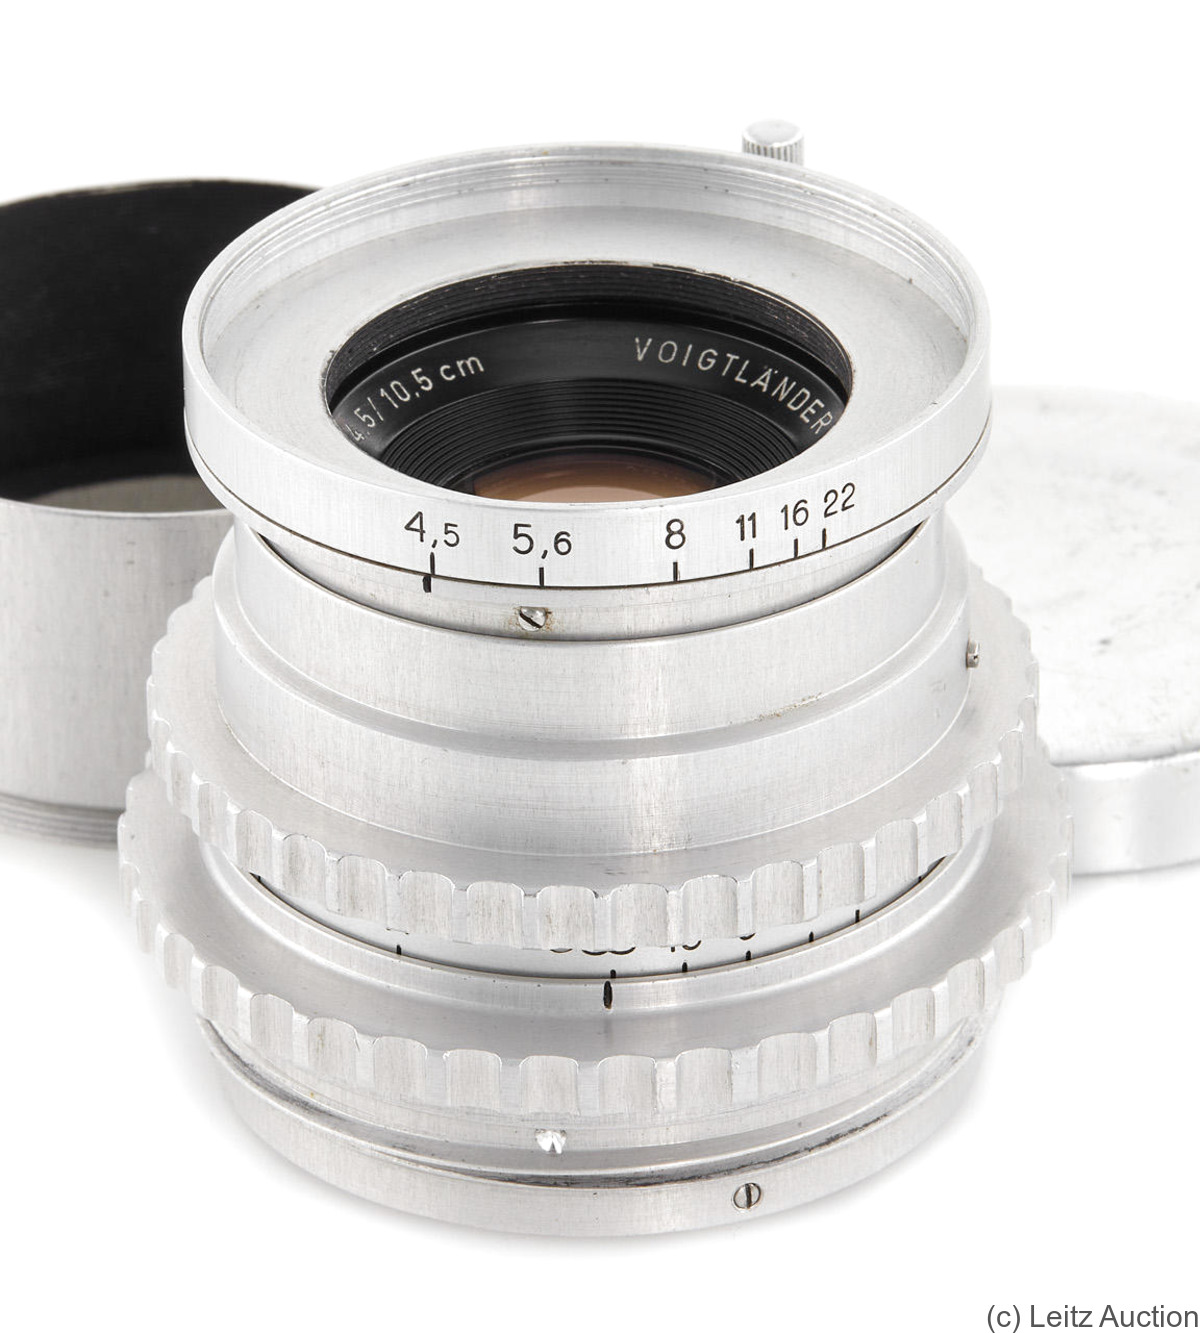 Voigtländer: 105mm (10.5cm) f4.5 Apo-Lanthar (1600F) camera